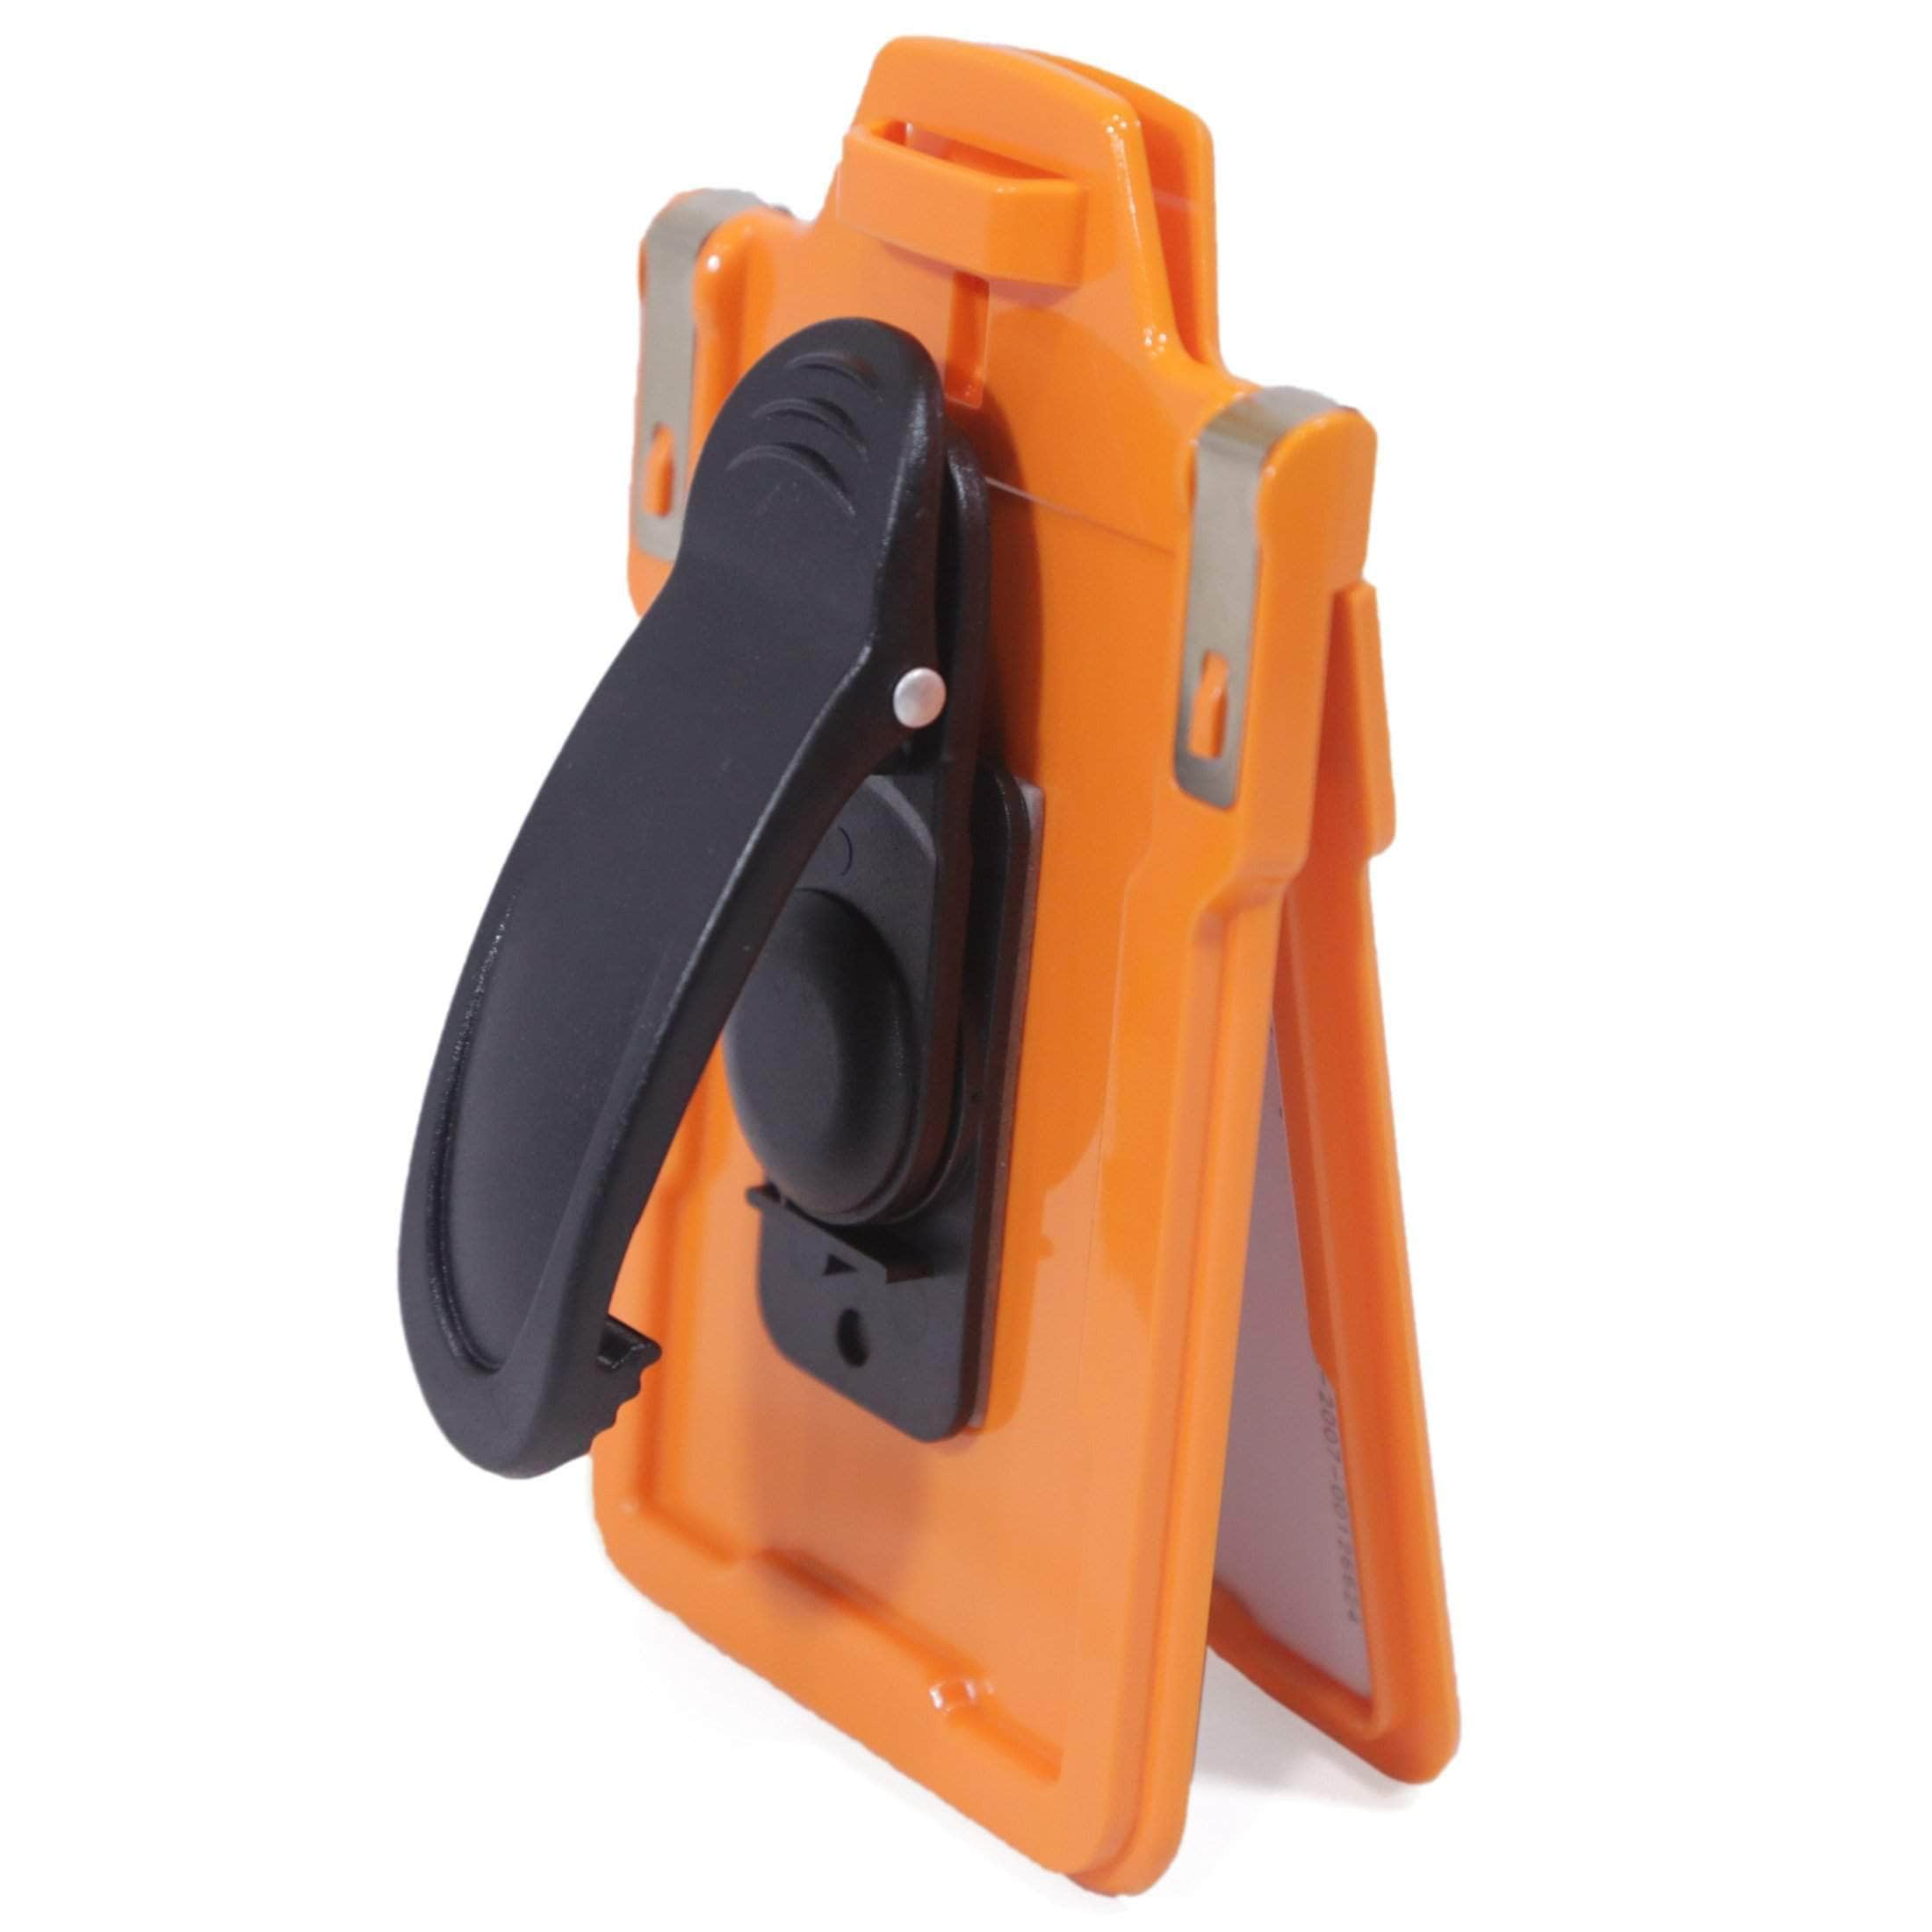 ID Stronghold Badgeholder Orange Secure Badge Holder Classic Vertical 1 Card Holder With Belt Clip